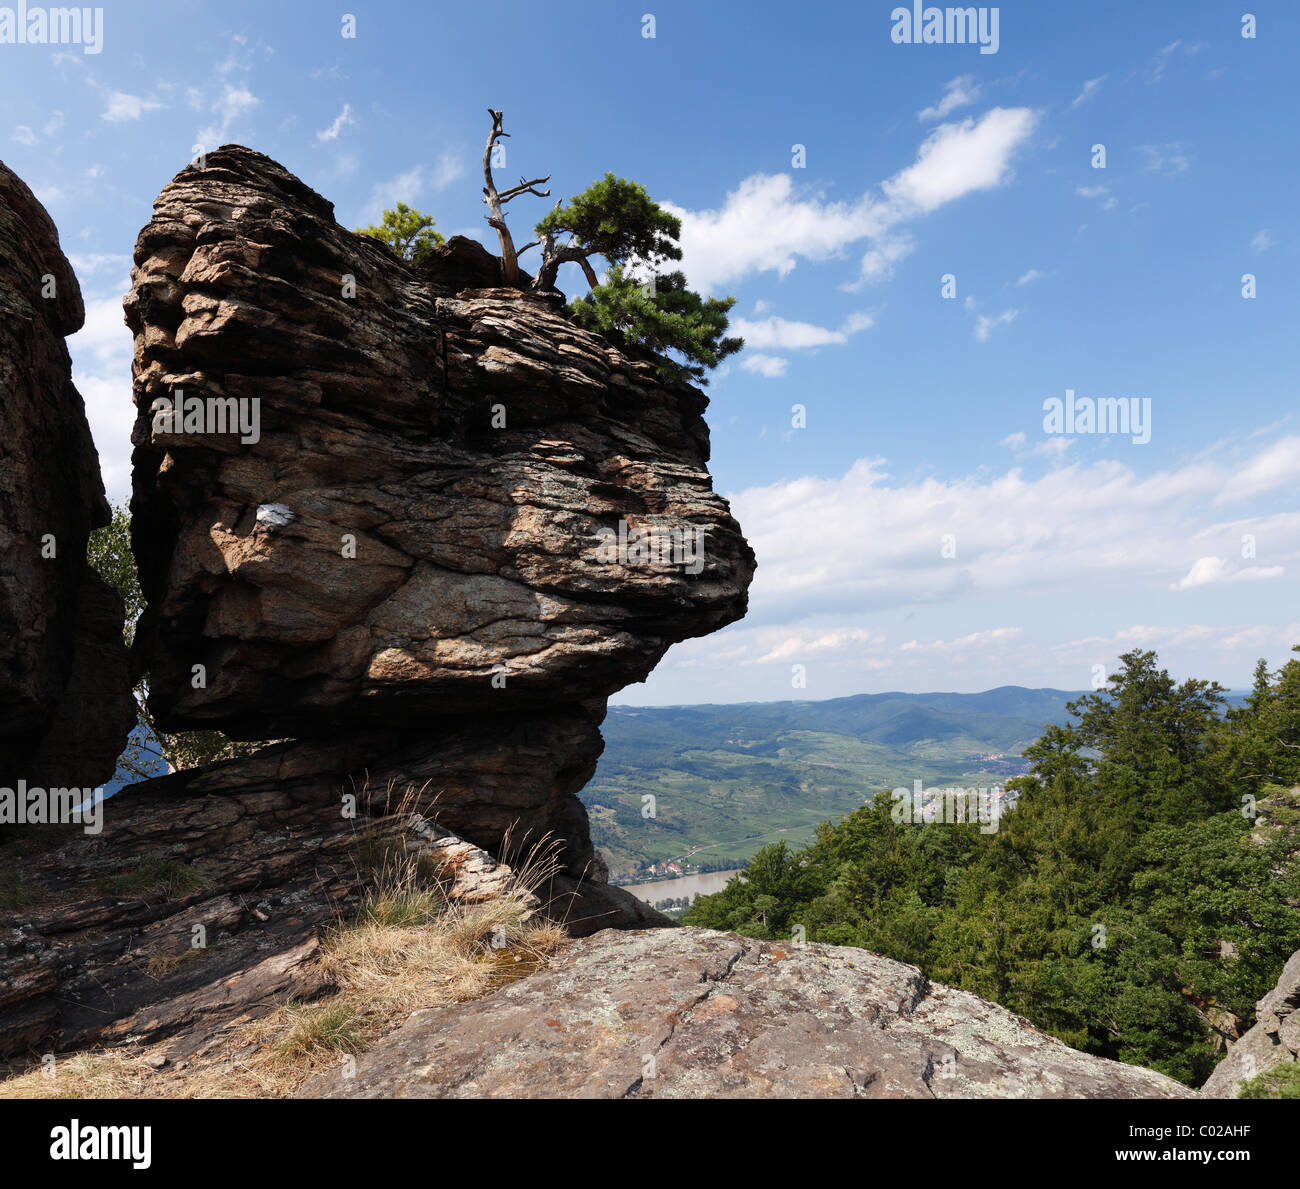 Hoher Stein Mountain, Muehlberg, Dunkelsteinerwald, Wachau, Mostviertel, Lower Austria, Austria, Europe Stock Photo